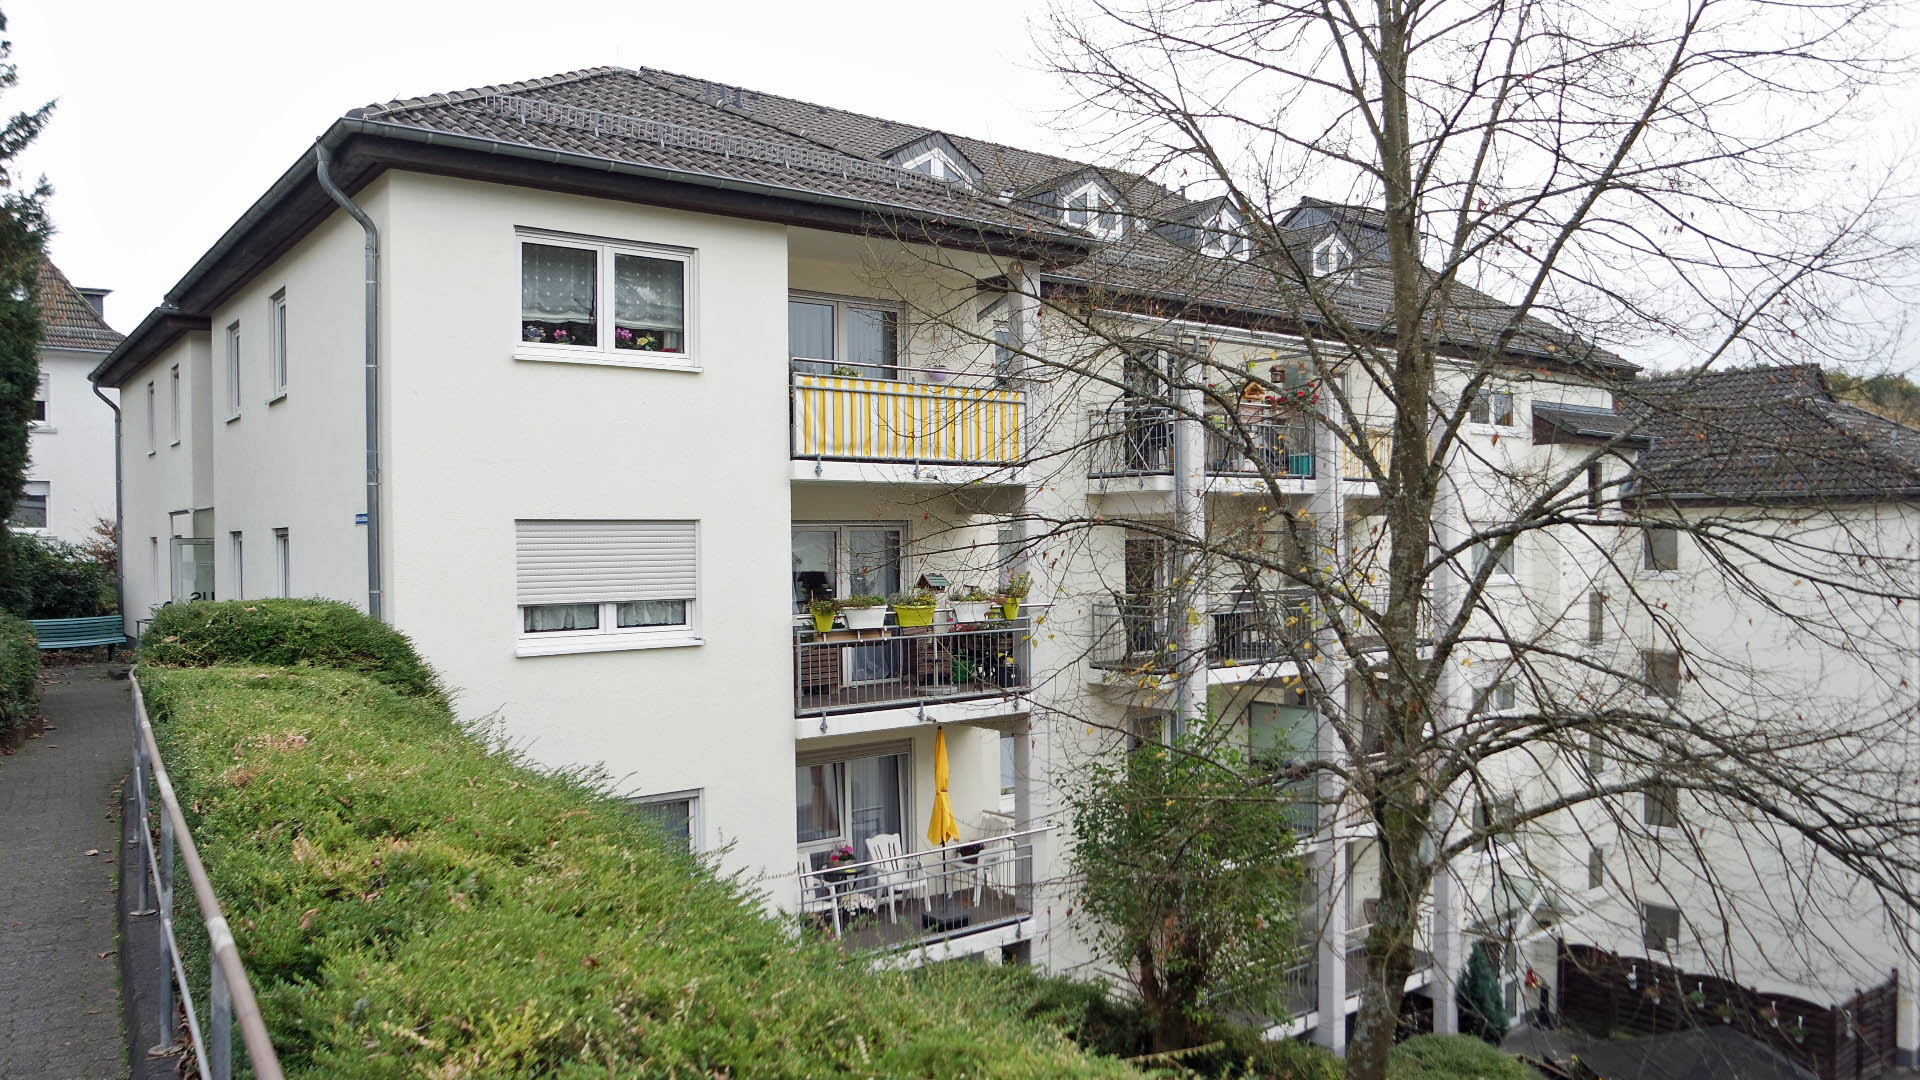 Gummersbach: Appartement in einer Seniorenresidenz, Gepflegte Seniorenresidenz (5 Häuser) mitten in Gummersbach